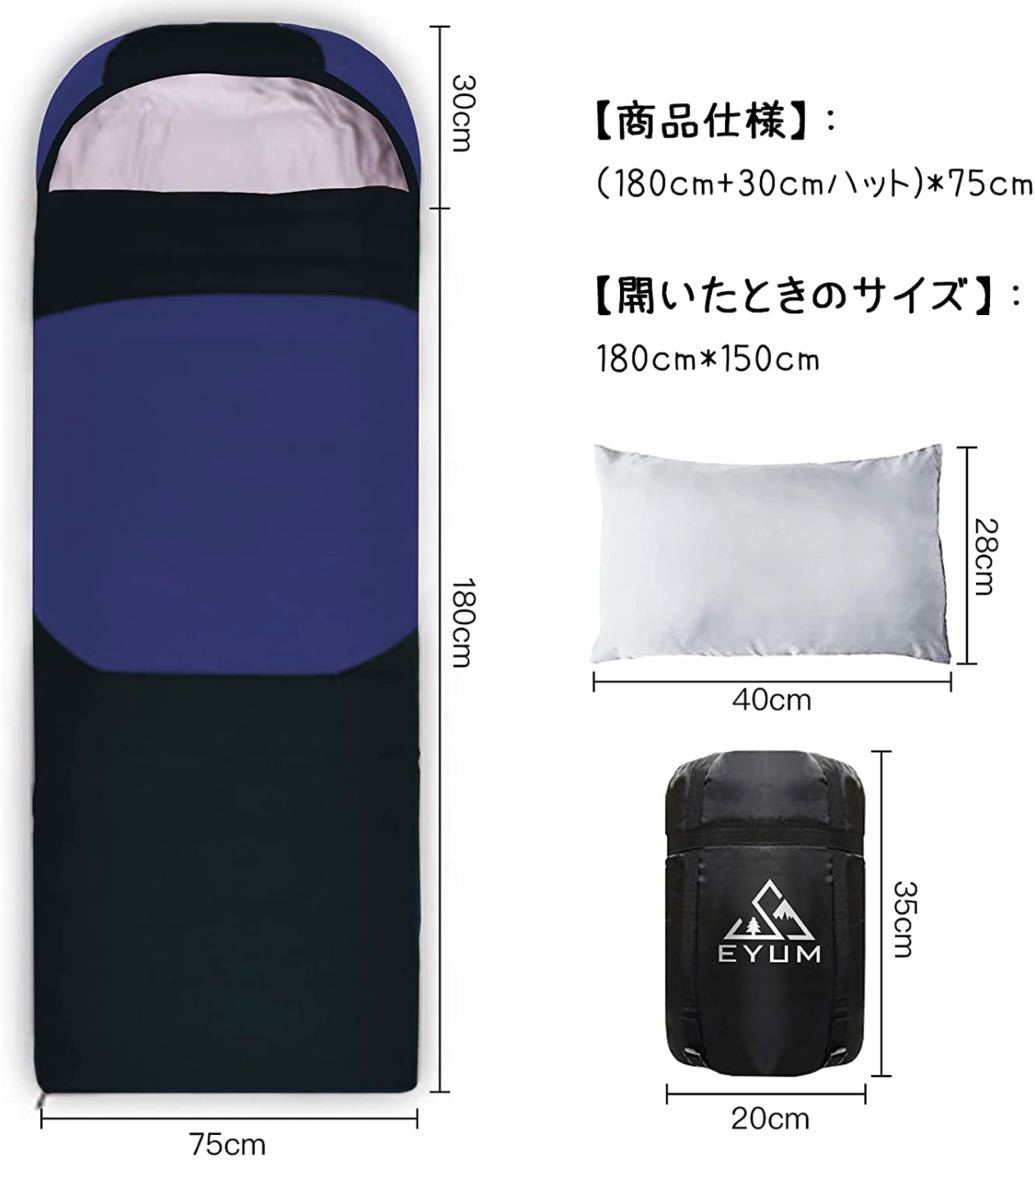 寝袋 シュラフ 封筒型 軽量 超暖かい 210T防水 コンパクト 収納袋